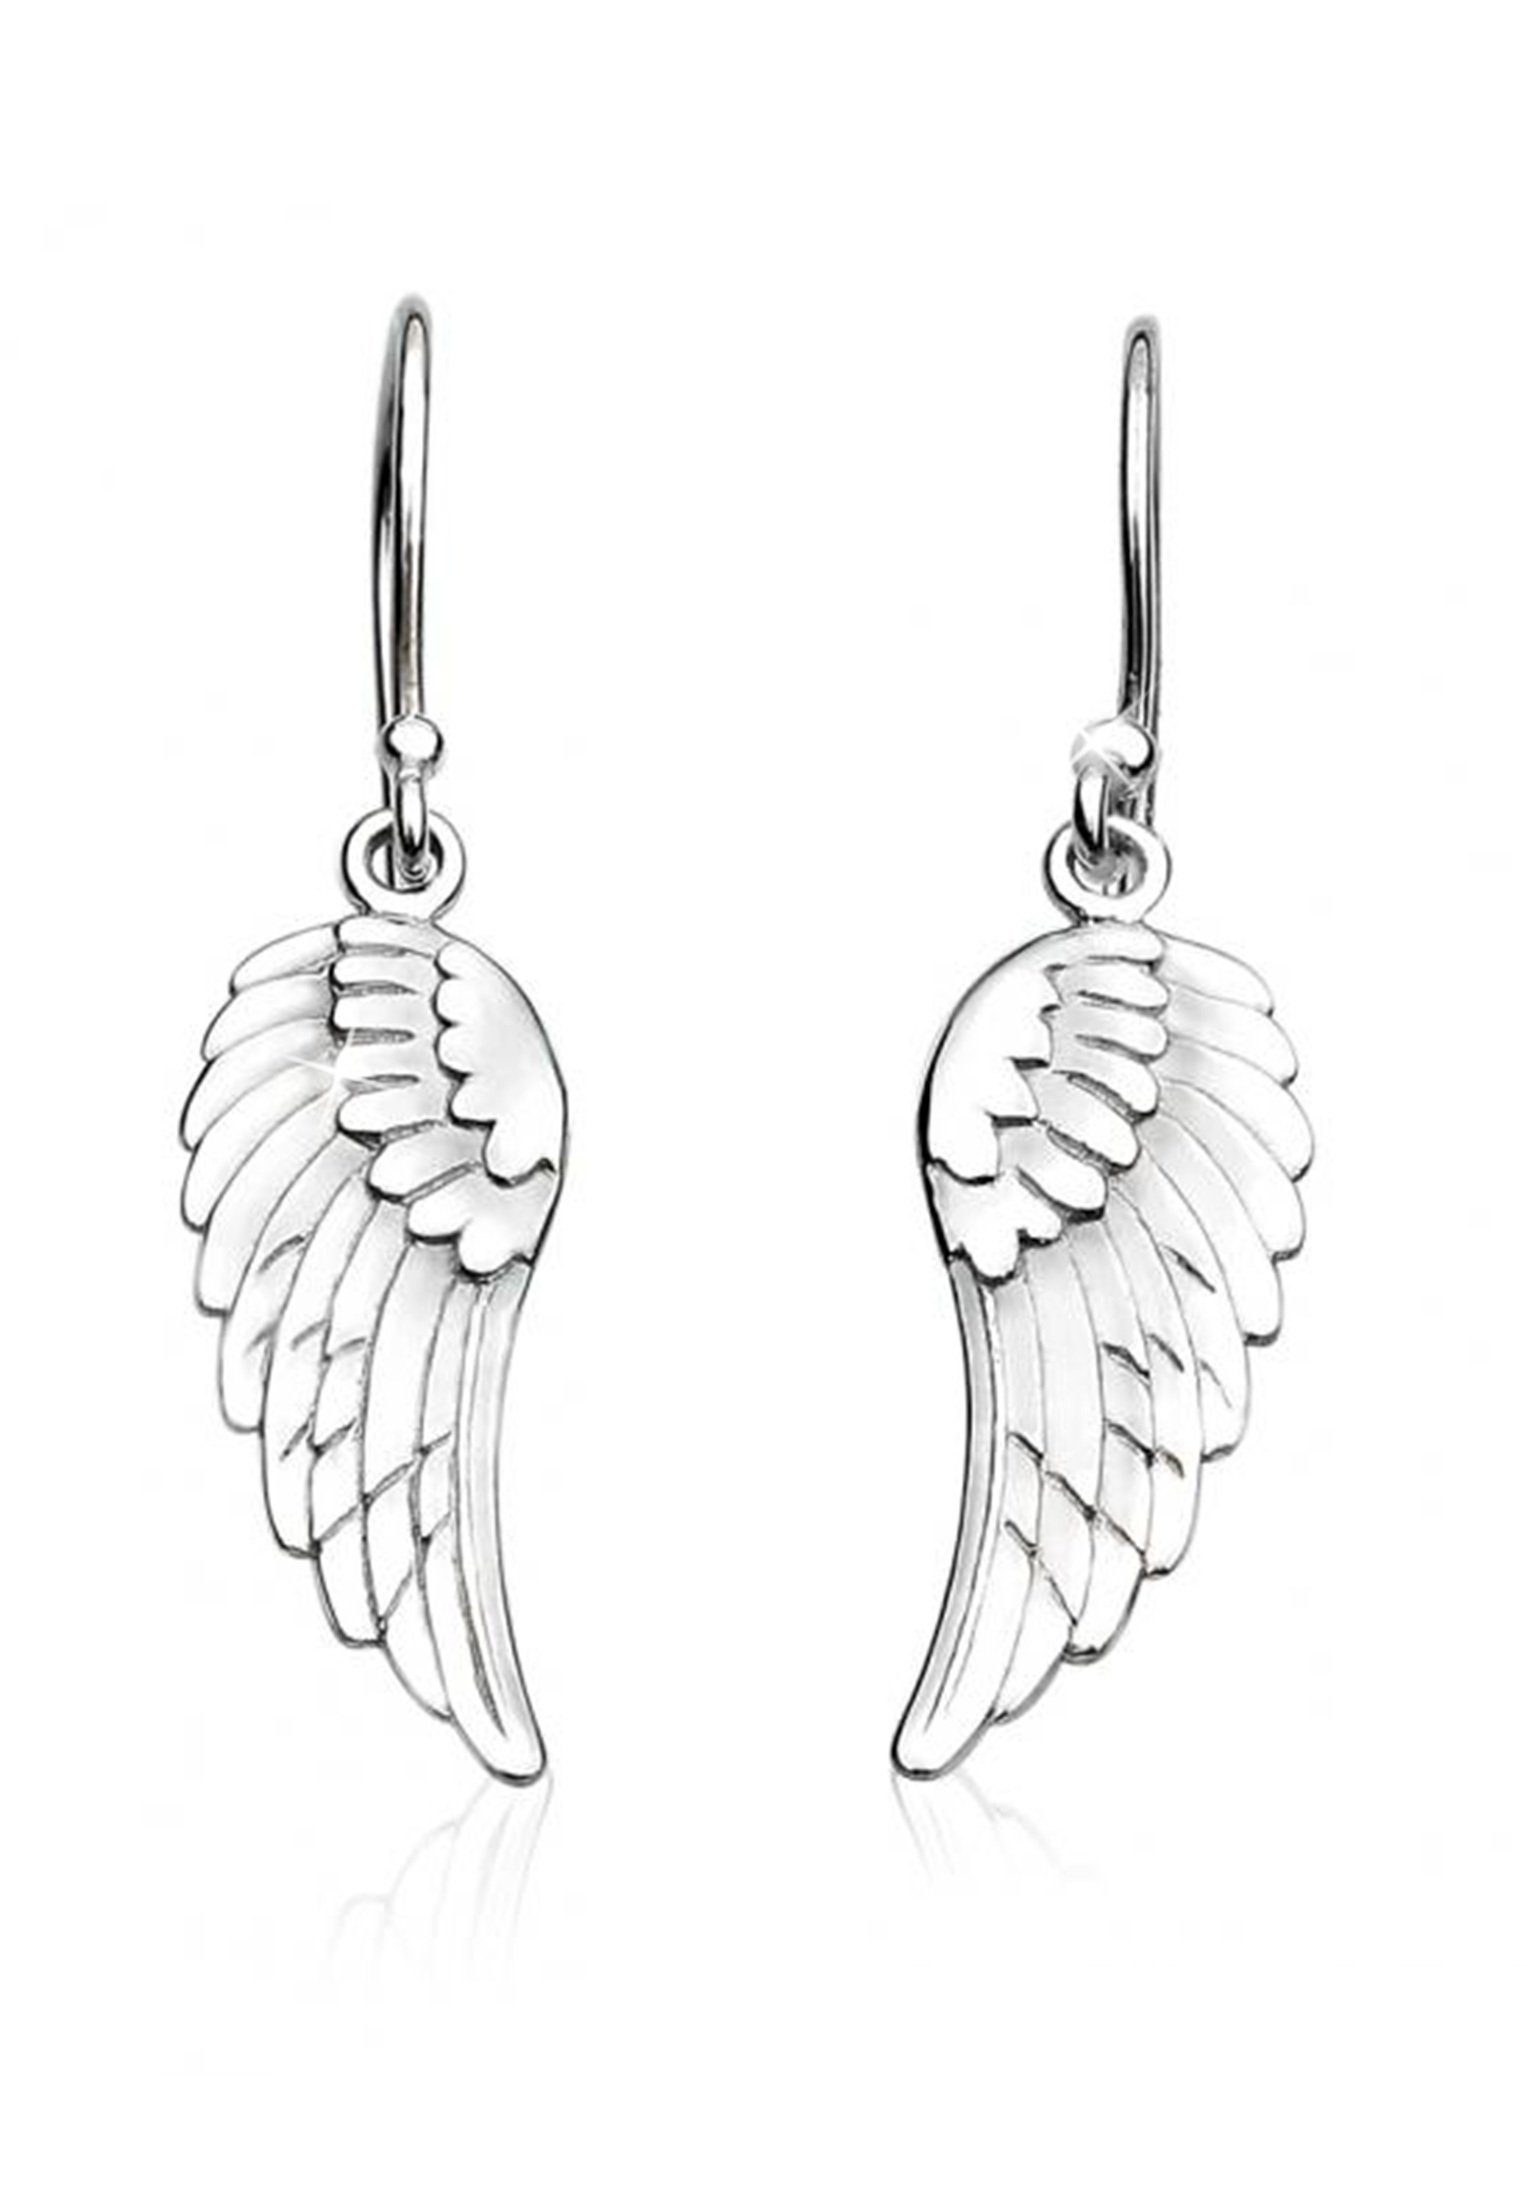 Nenalina Paar Ohrhänger Ohrhänger Flügel Glücksbringer Engel 925 Silber